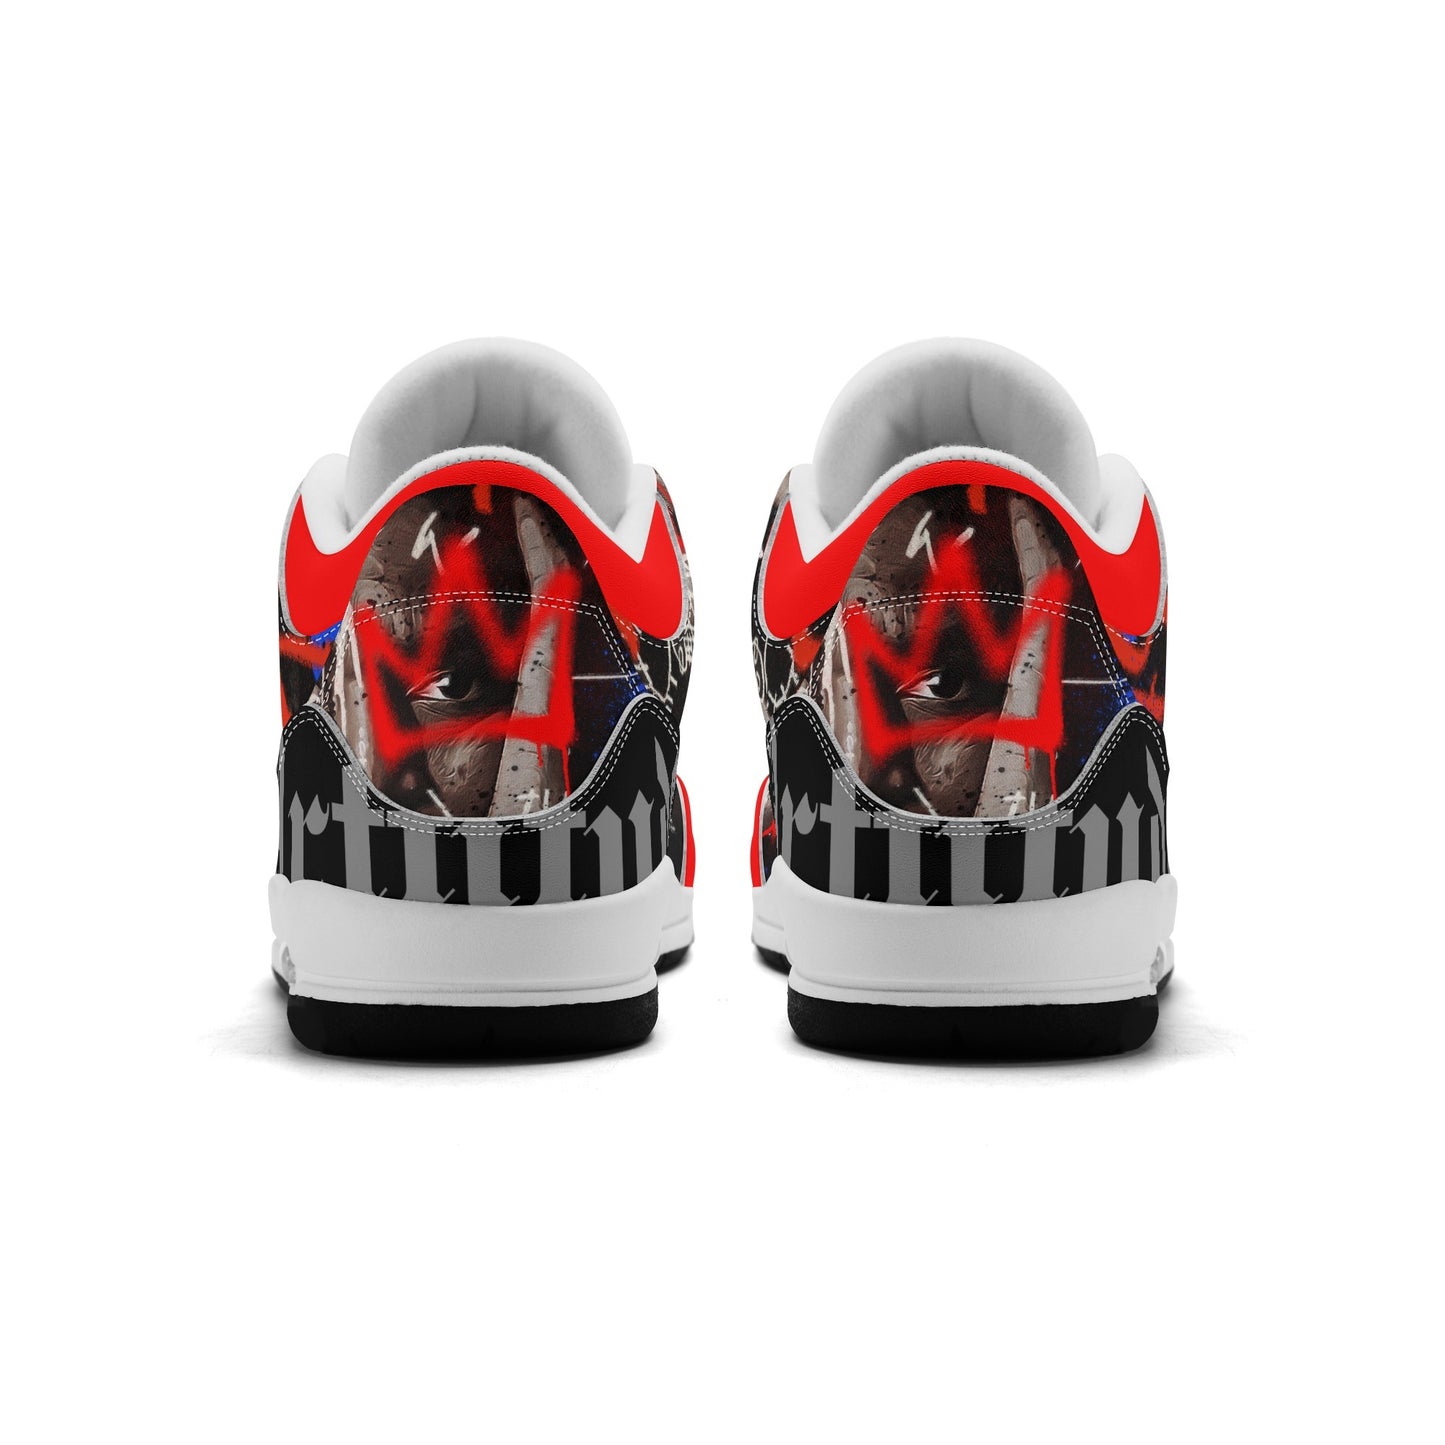 BSQ 1.0 RUN-R sneakers